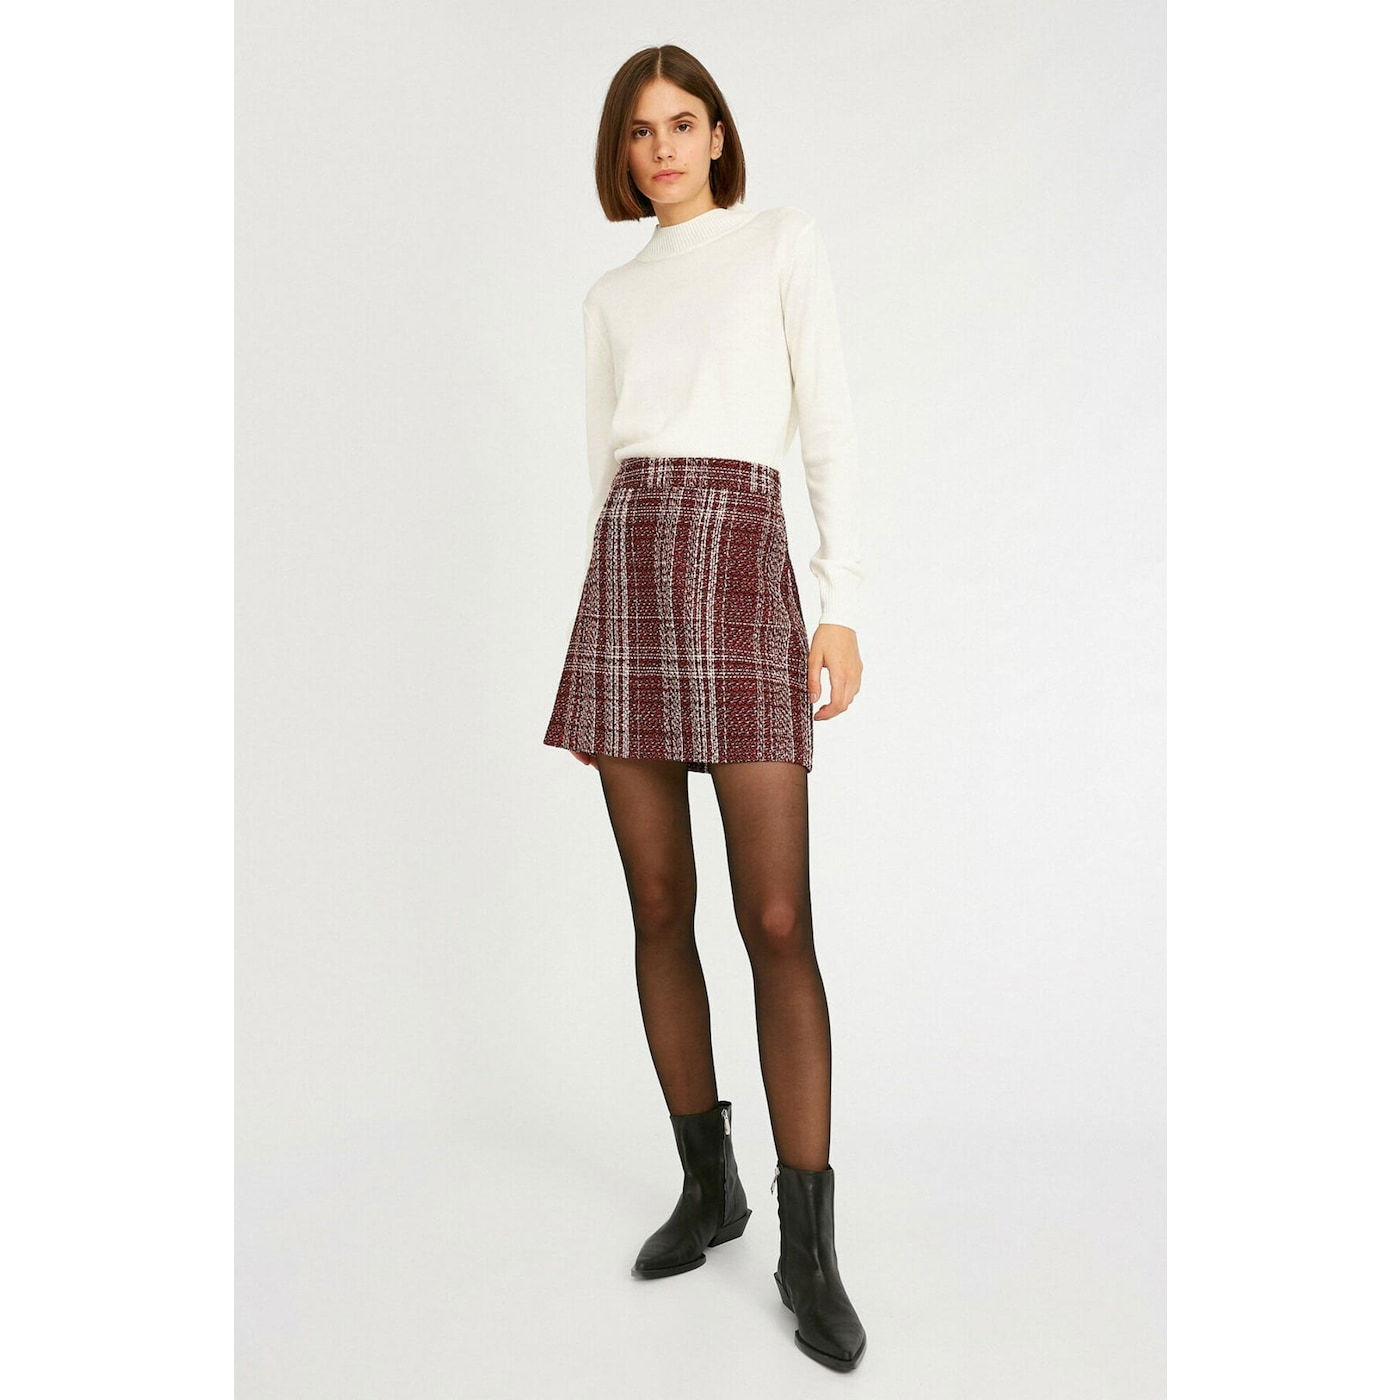 Koton Women Burgundy Patterned Skirt